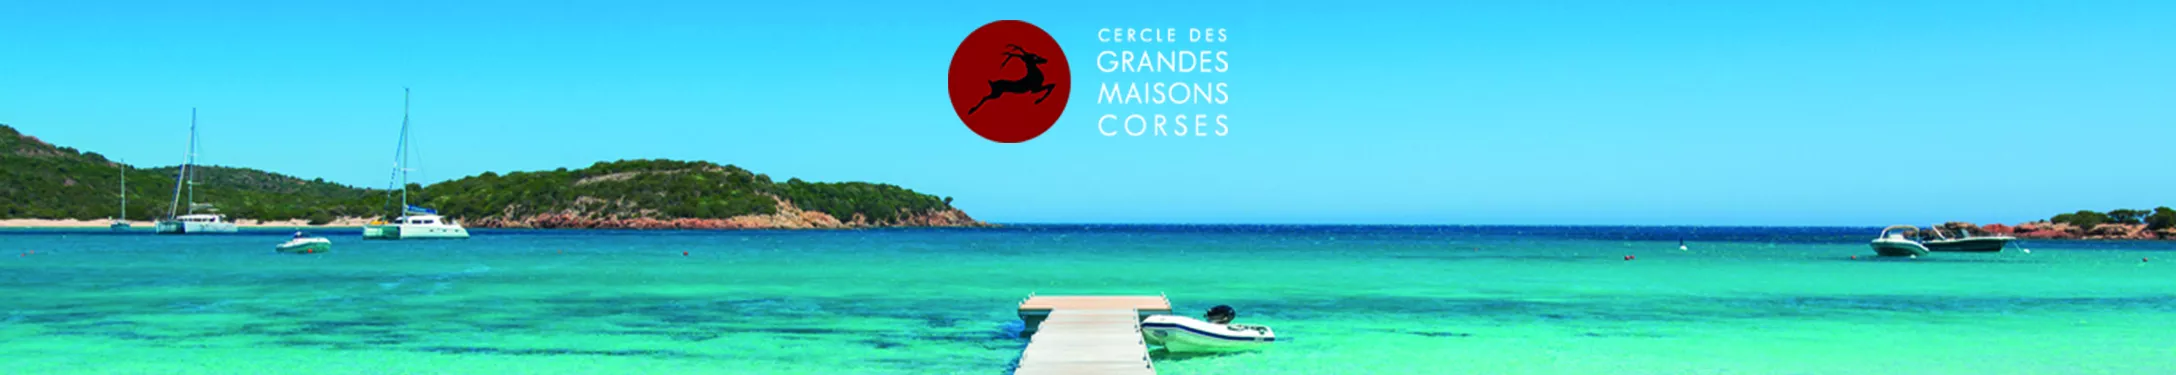 The Cercle des Grandes Maisons Corses